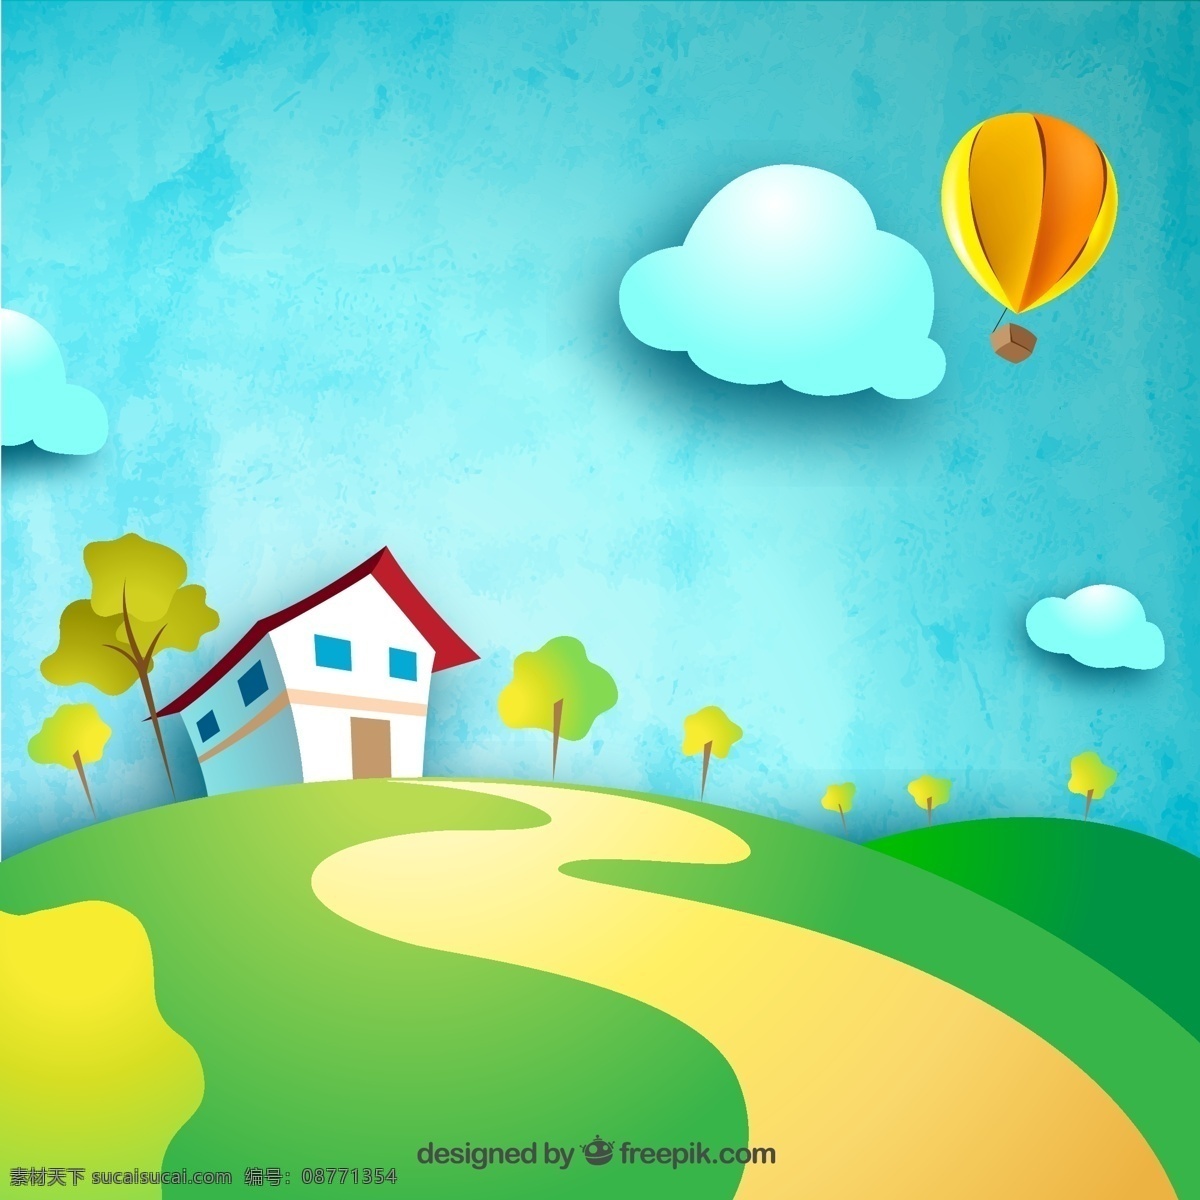 房屋与热气球 卡通 房屋 热气球 屋子 房子 建筑 云朵 白云 树木 大树 山坡 草地 风景 水彩 彩绘 装饰 卡片 插画 背景 海报 画册 平面素材